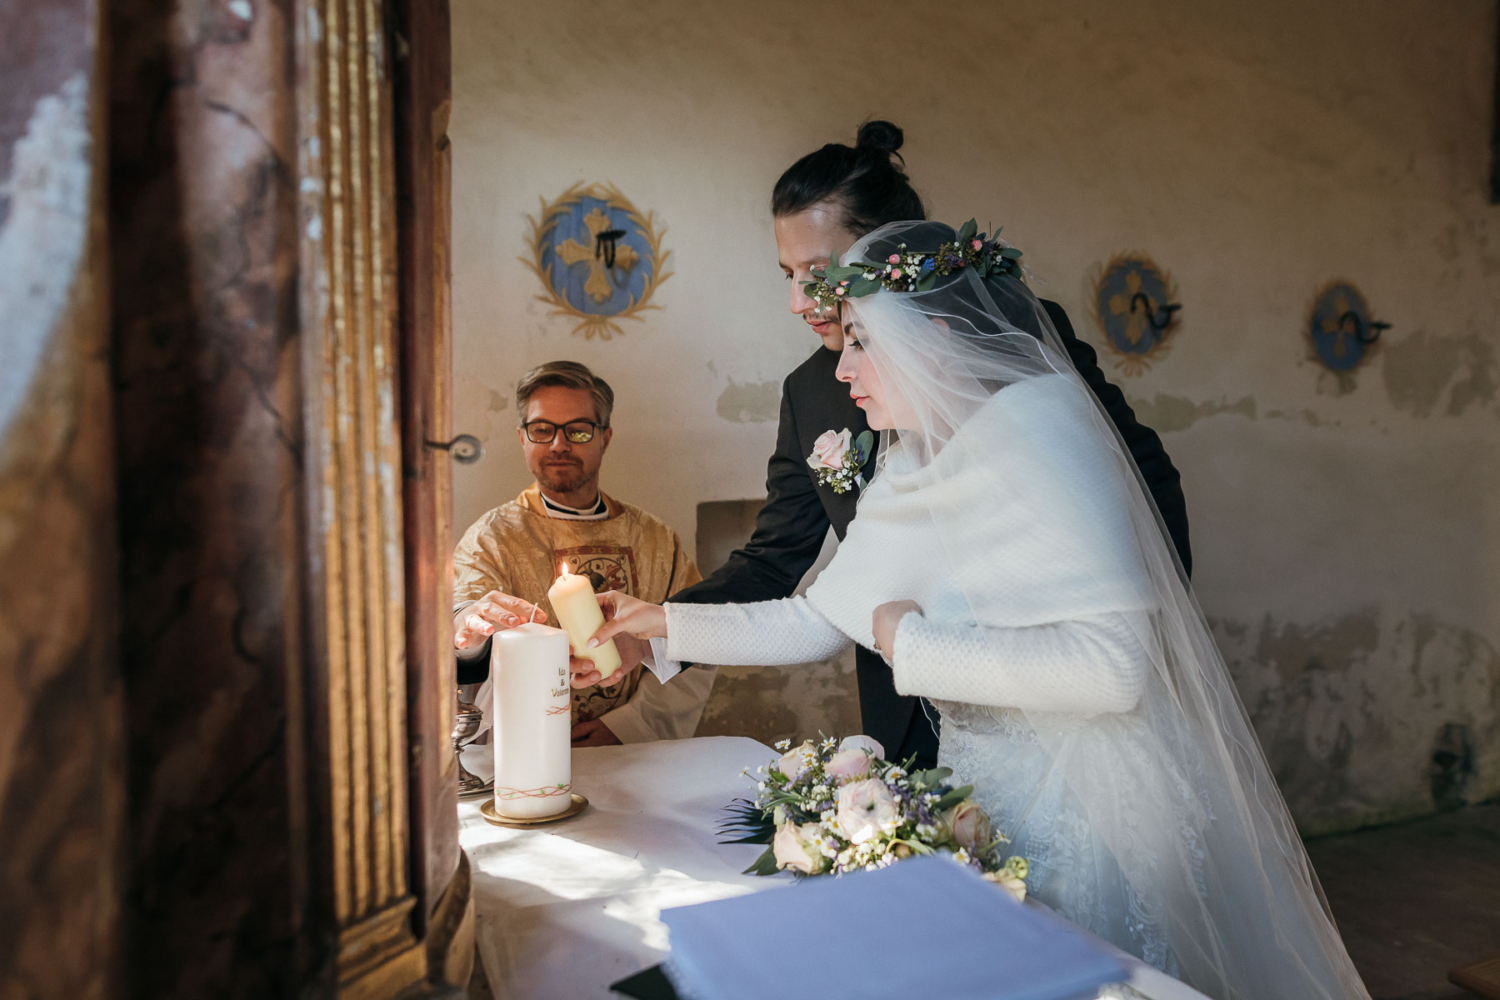 Atemberaubendes Hochzeitsfoto vom Anzünden der Kerze in einer kleinen Kapelle nördlich von Graz, Steiermark